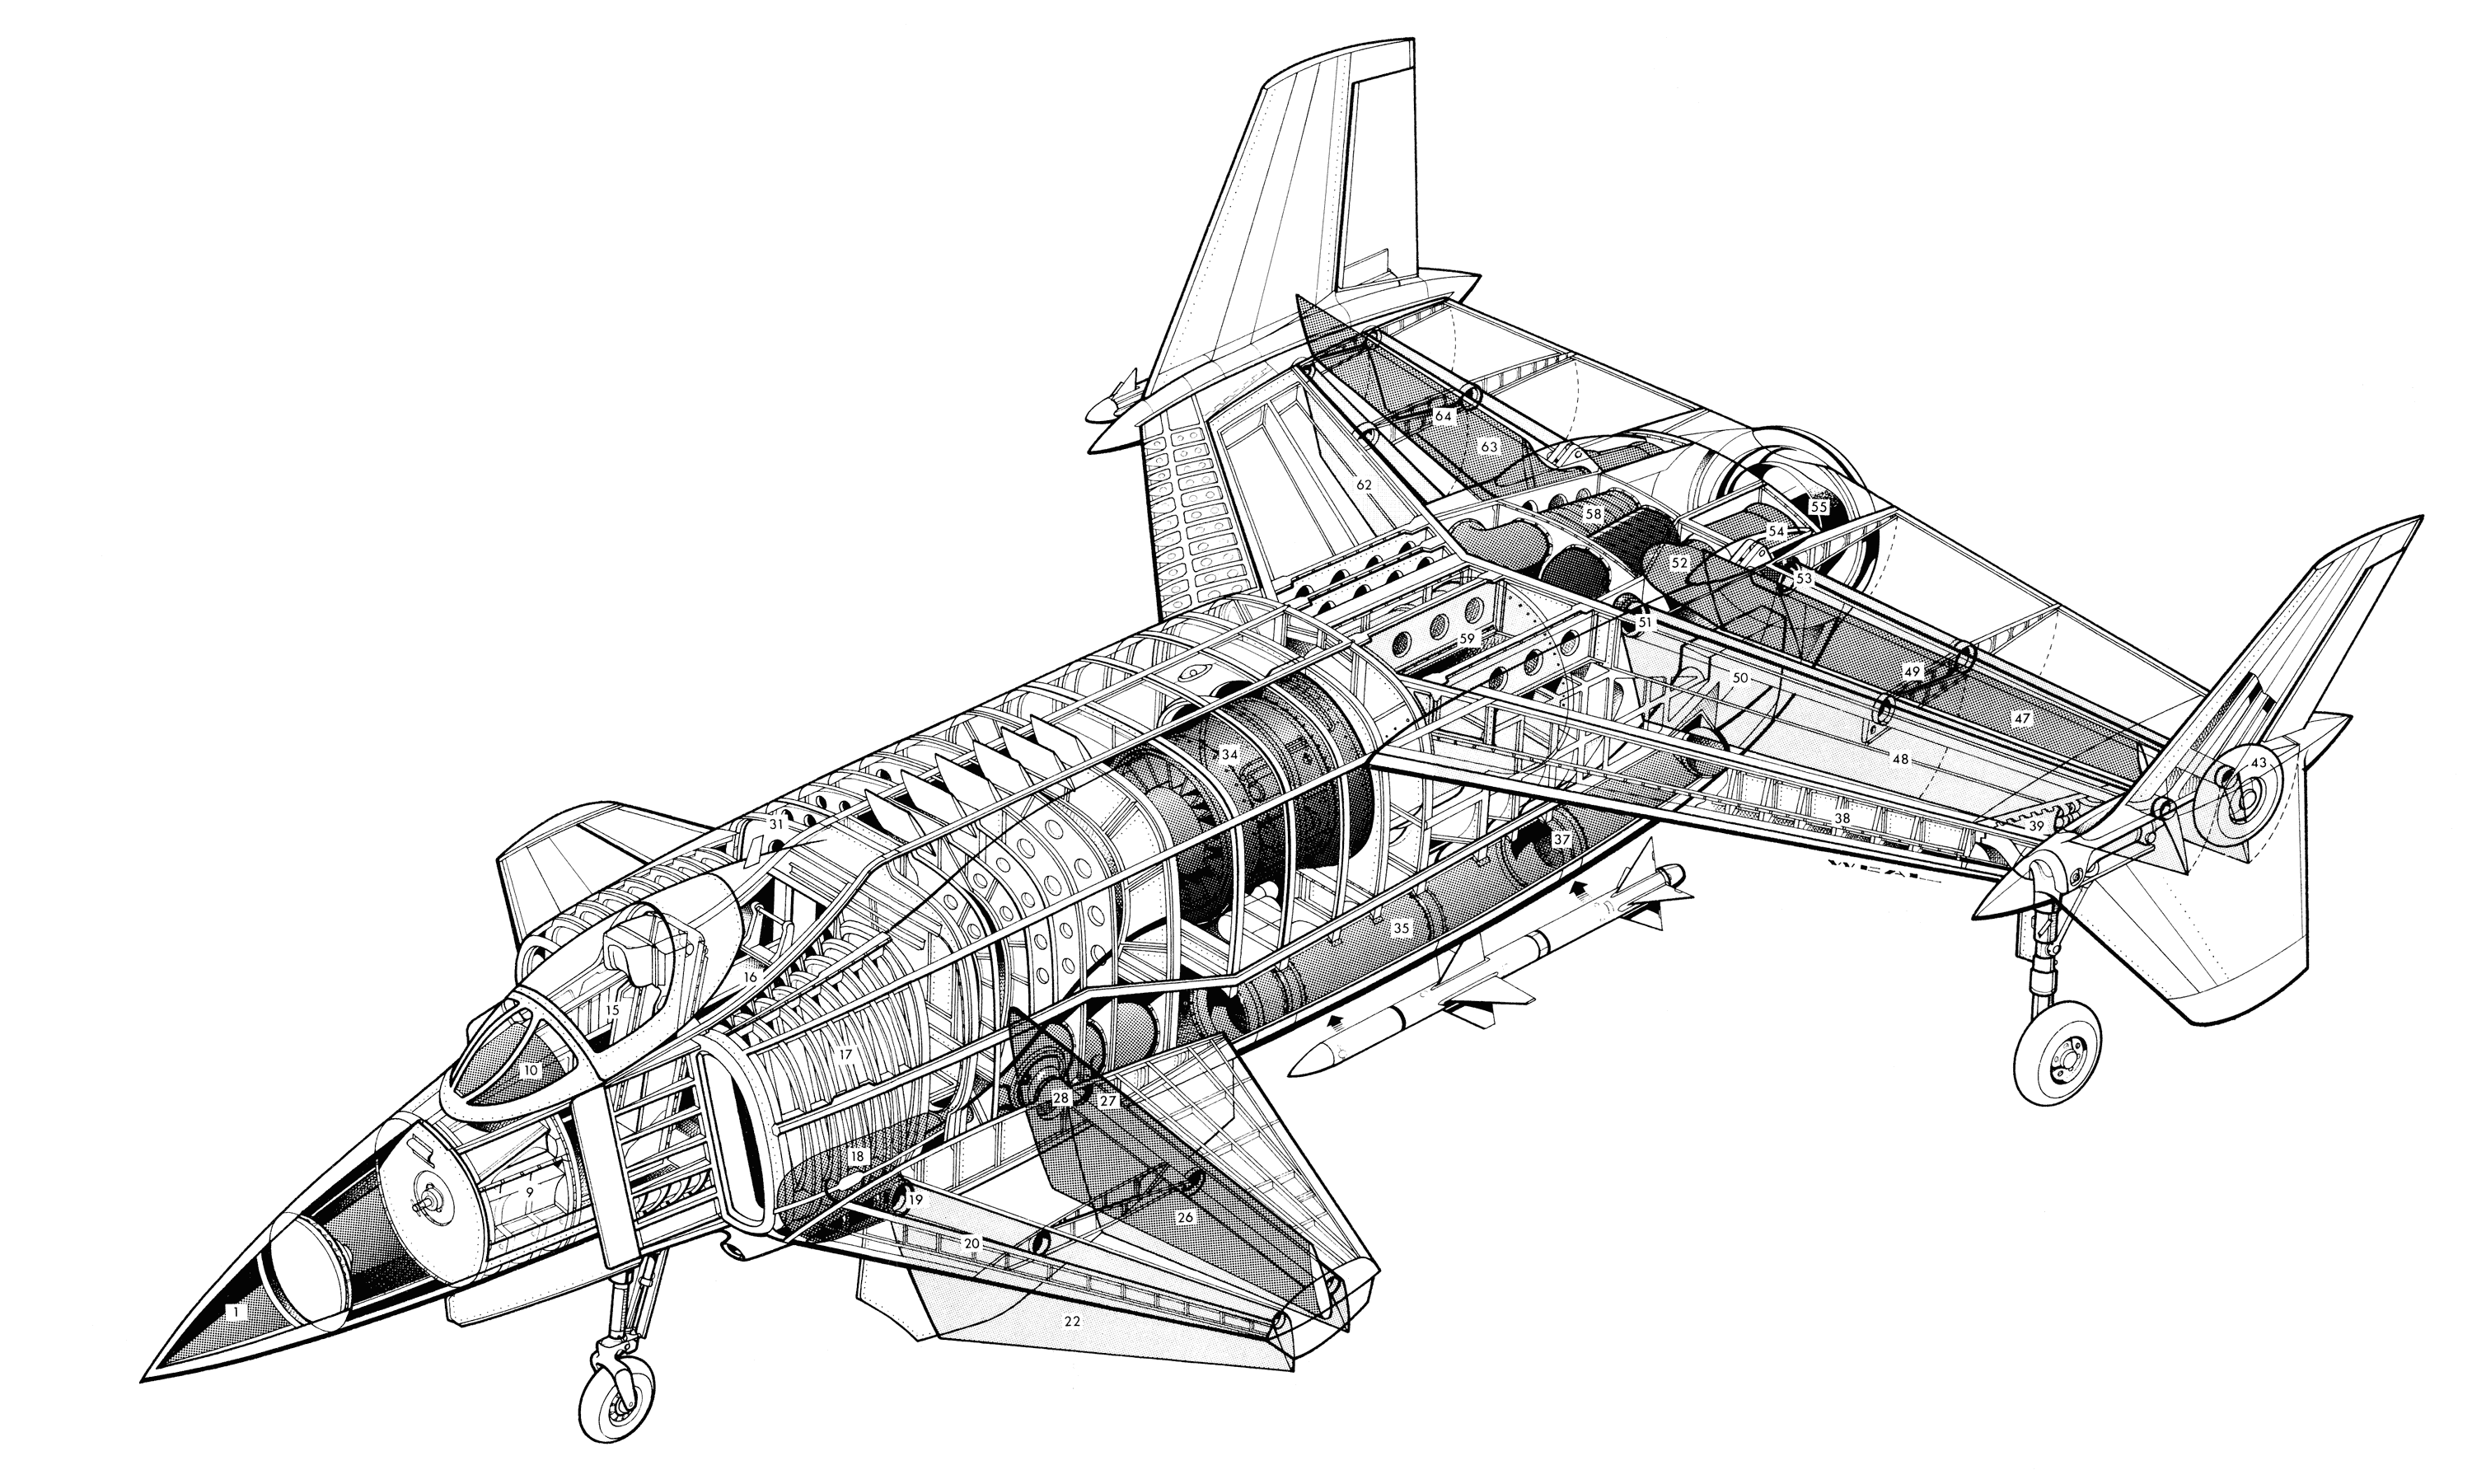 Rockwell XFV-12 cutaway